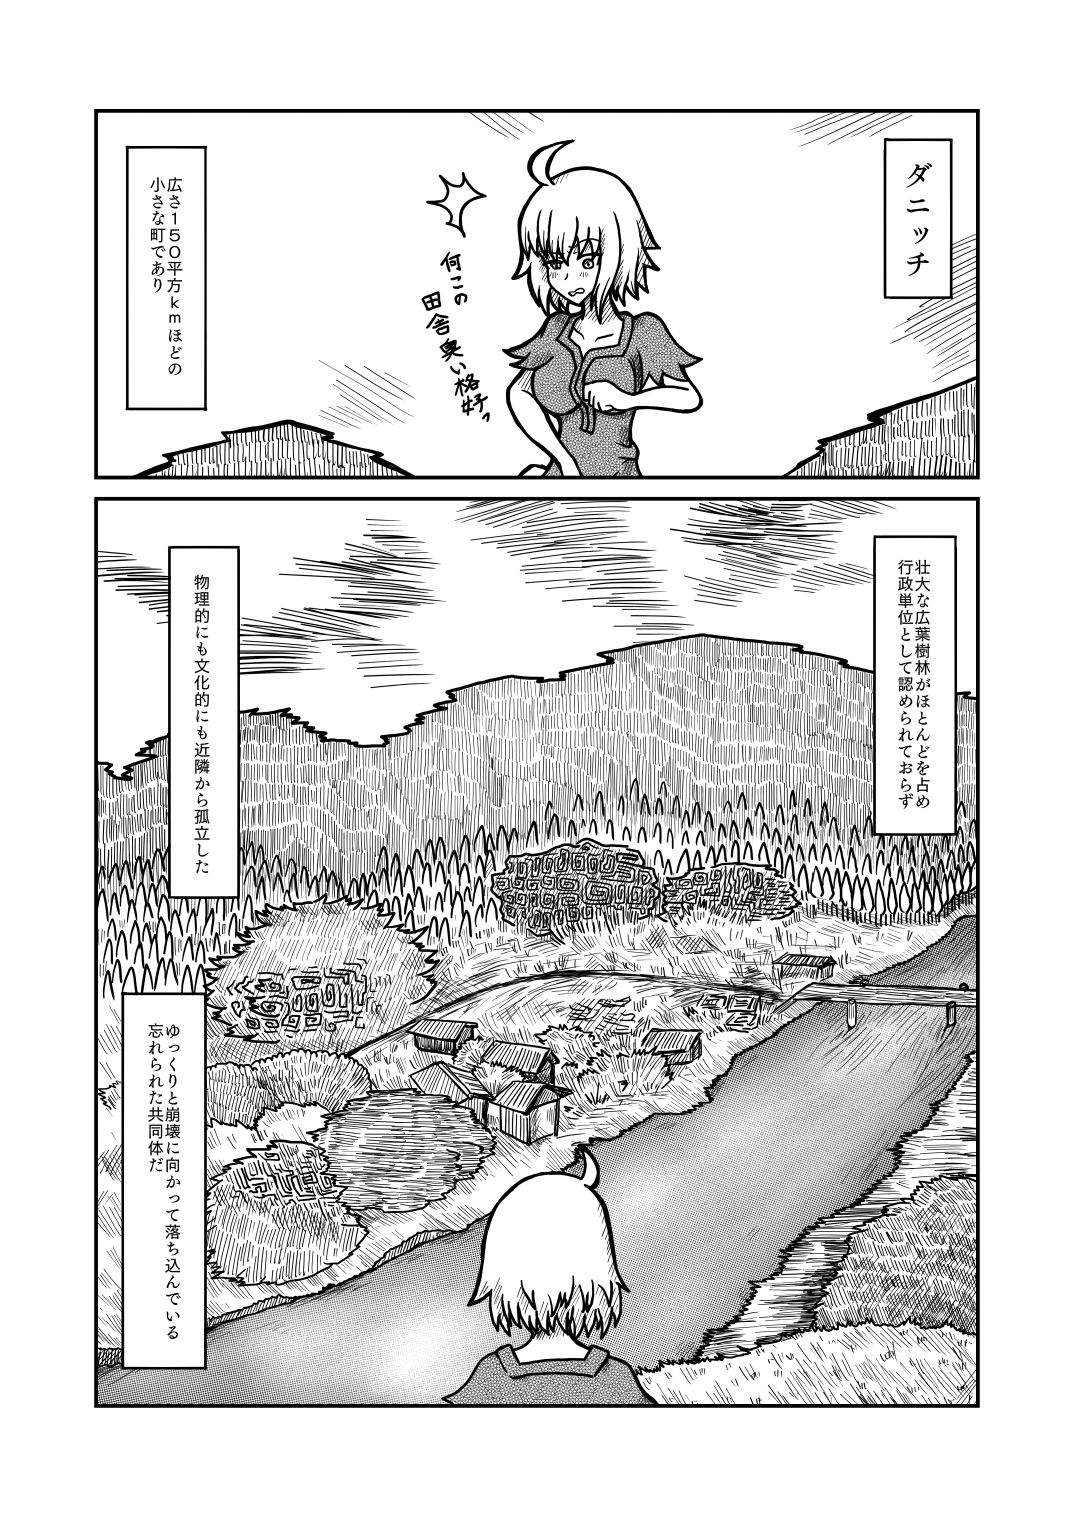 [Shigato] Jeanne x Lavi Dunwich Kai Kikou (Fate/Grand Order, Cthulhu Mythos) [Digital] 8